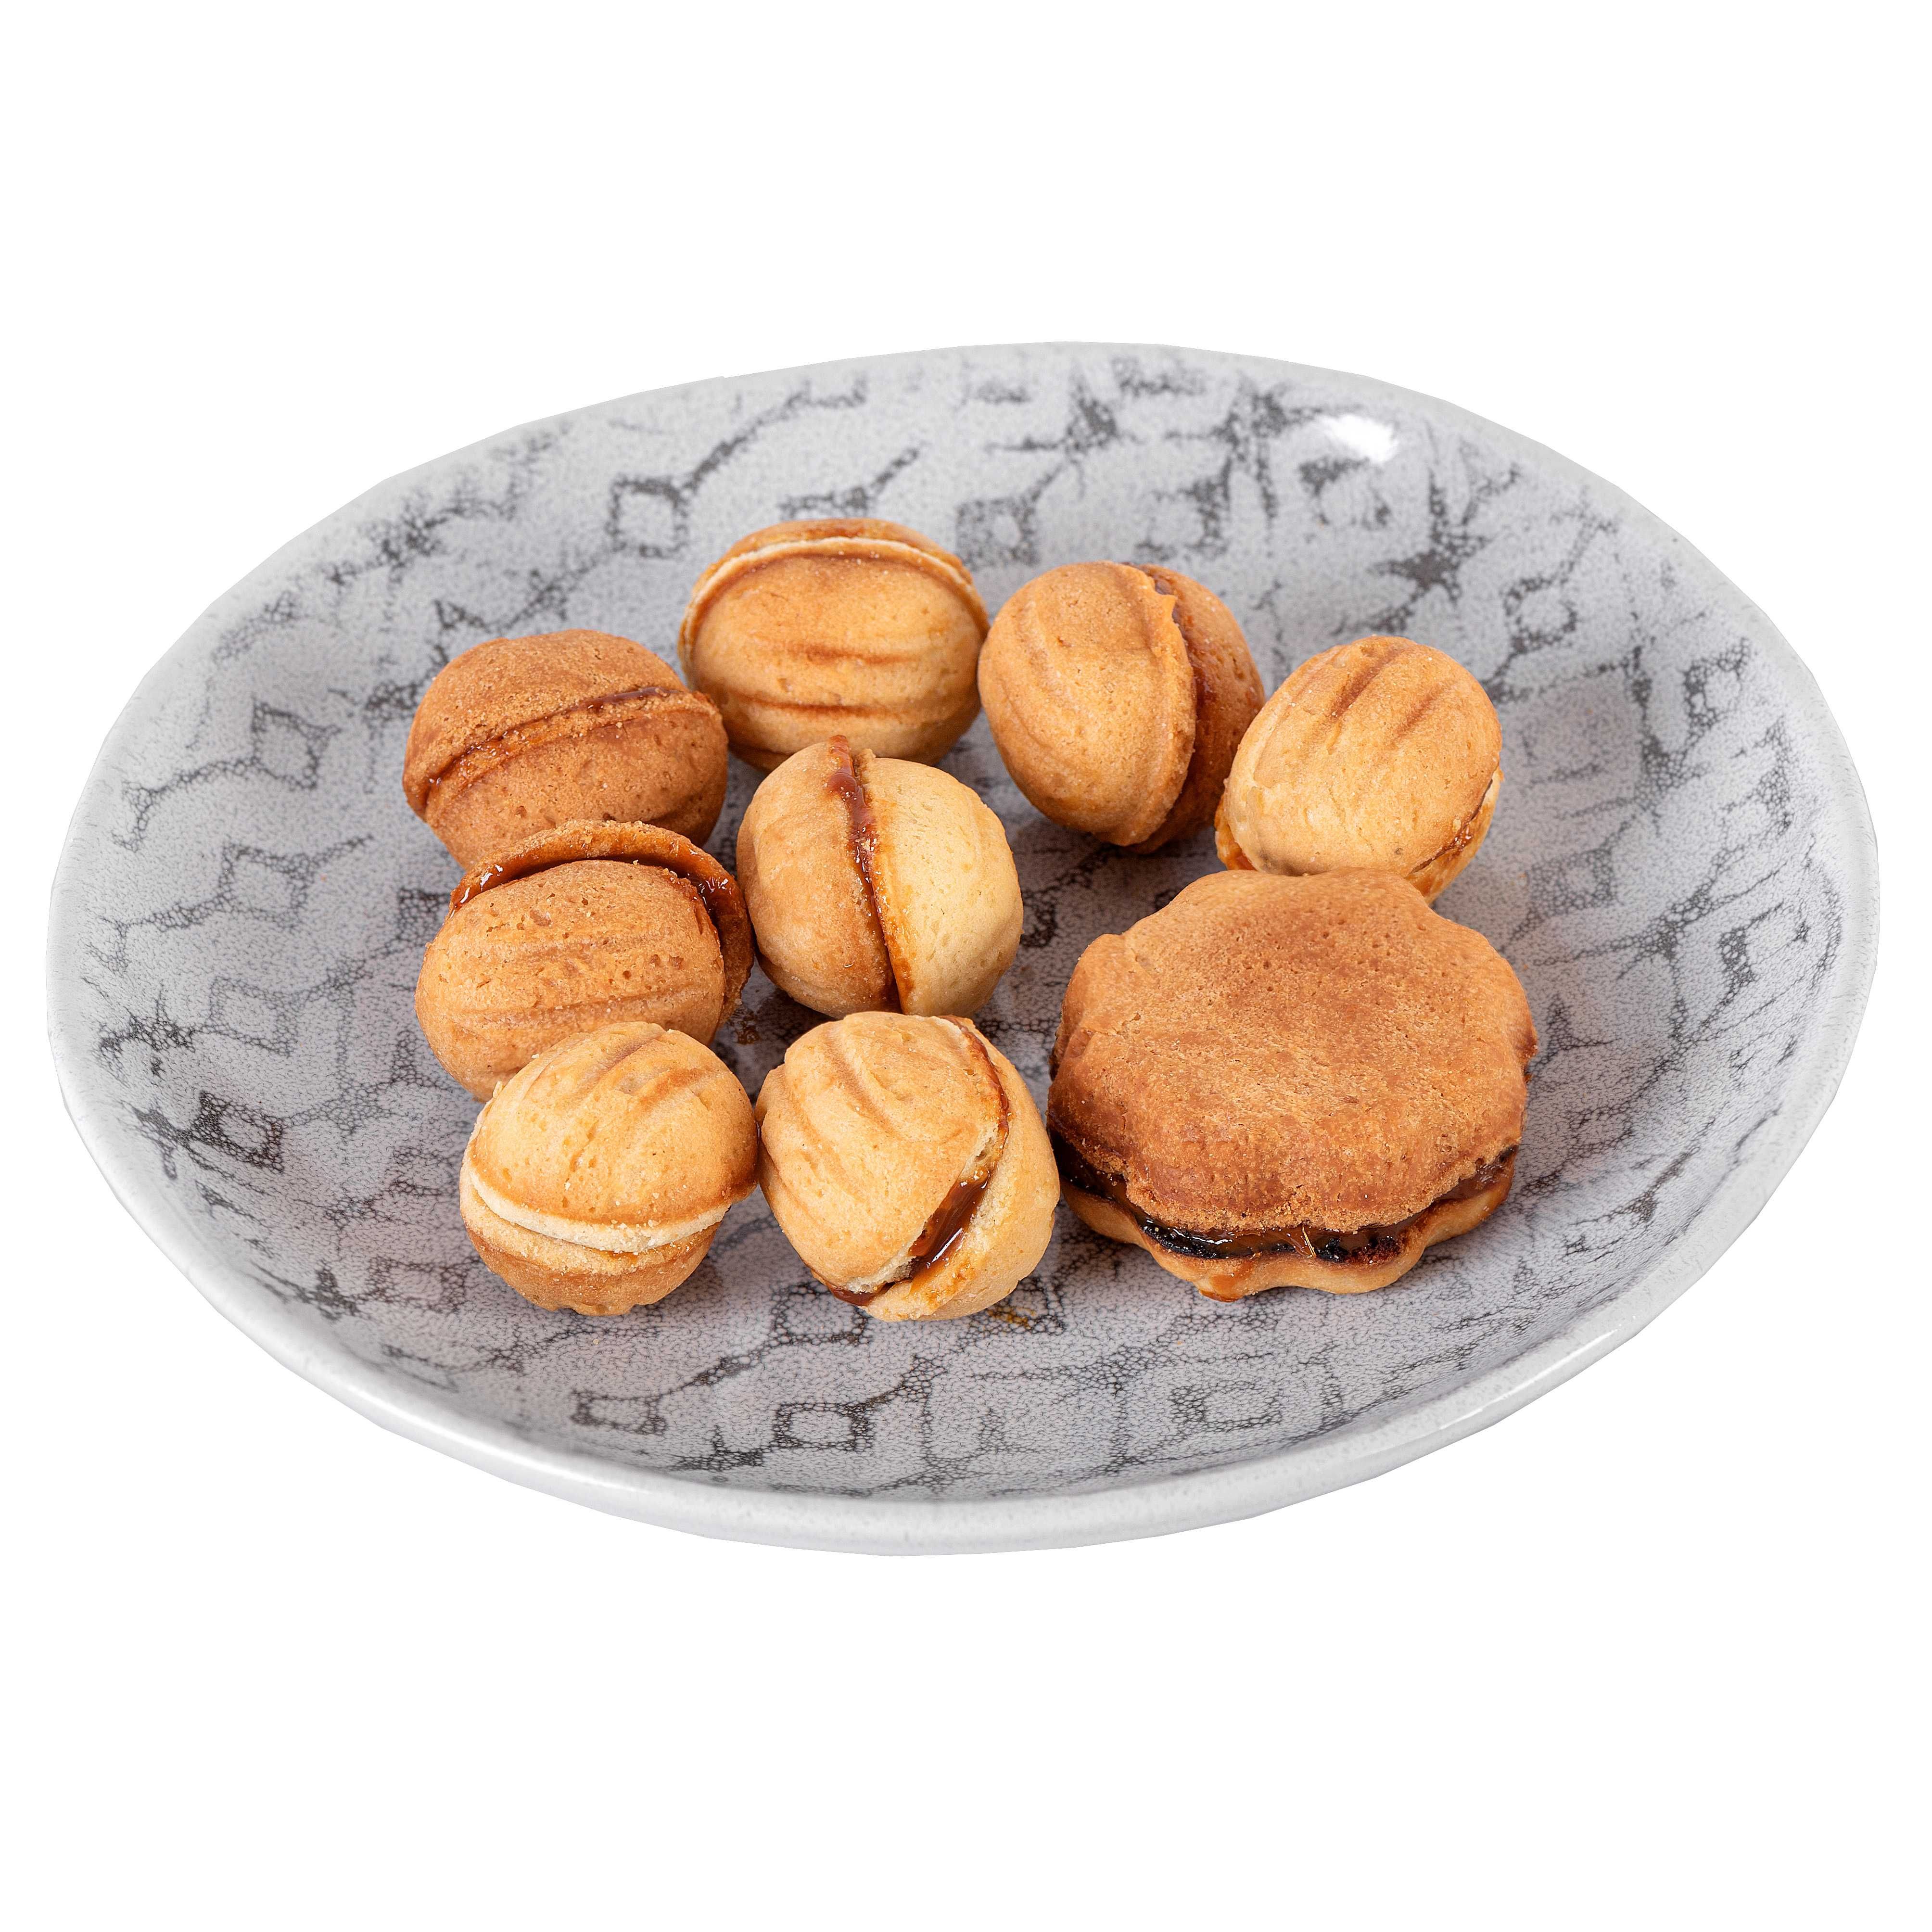 Большая орешница форма для выпечки орешков со сгущенкой (23 ореха)